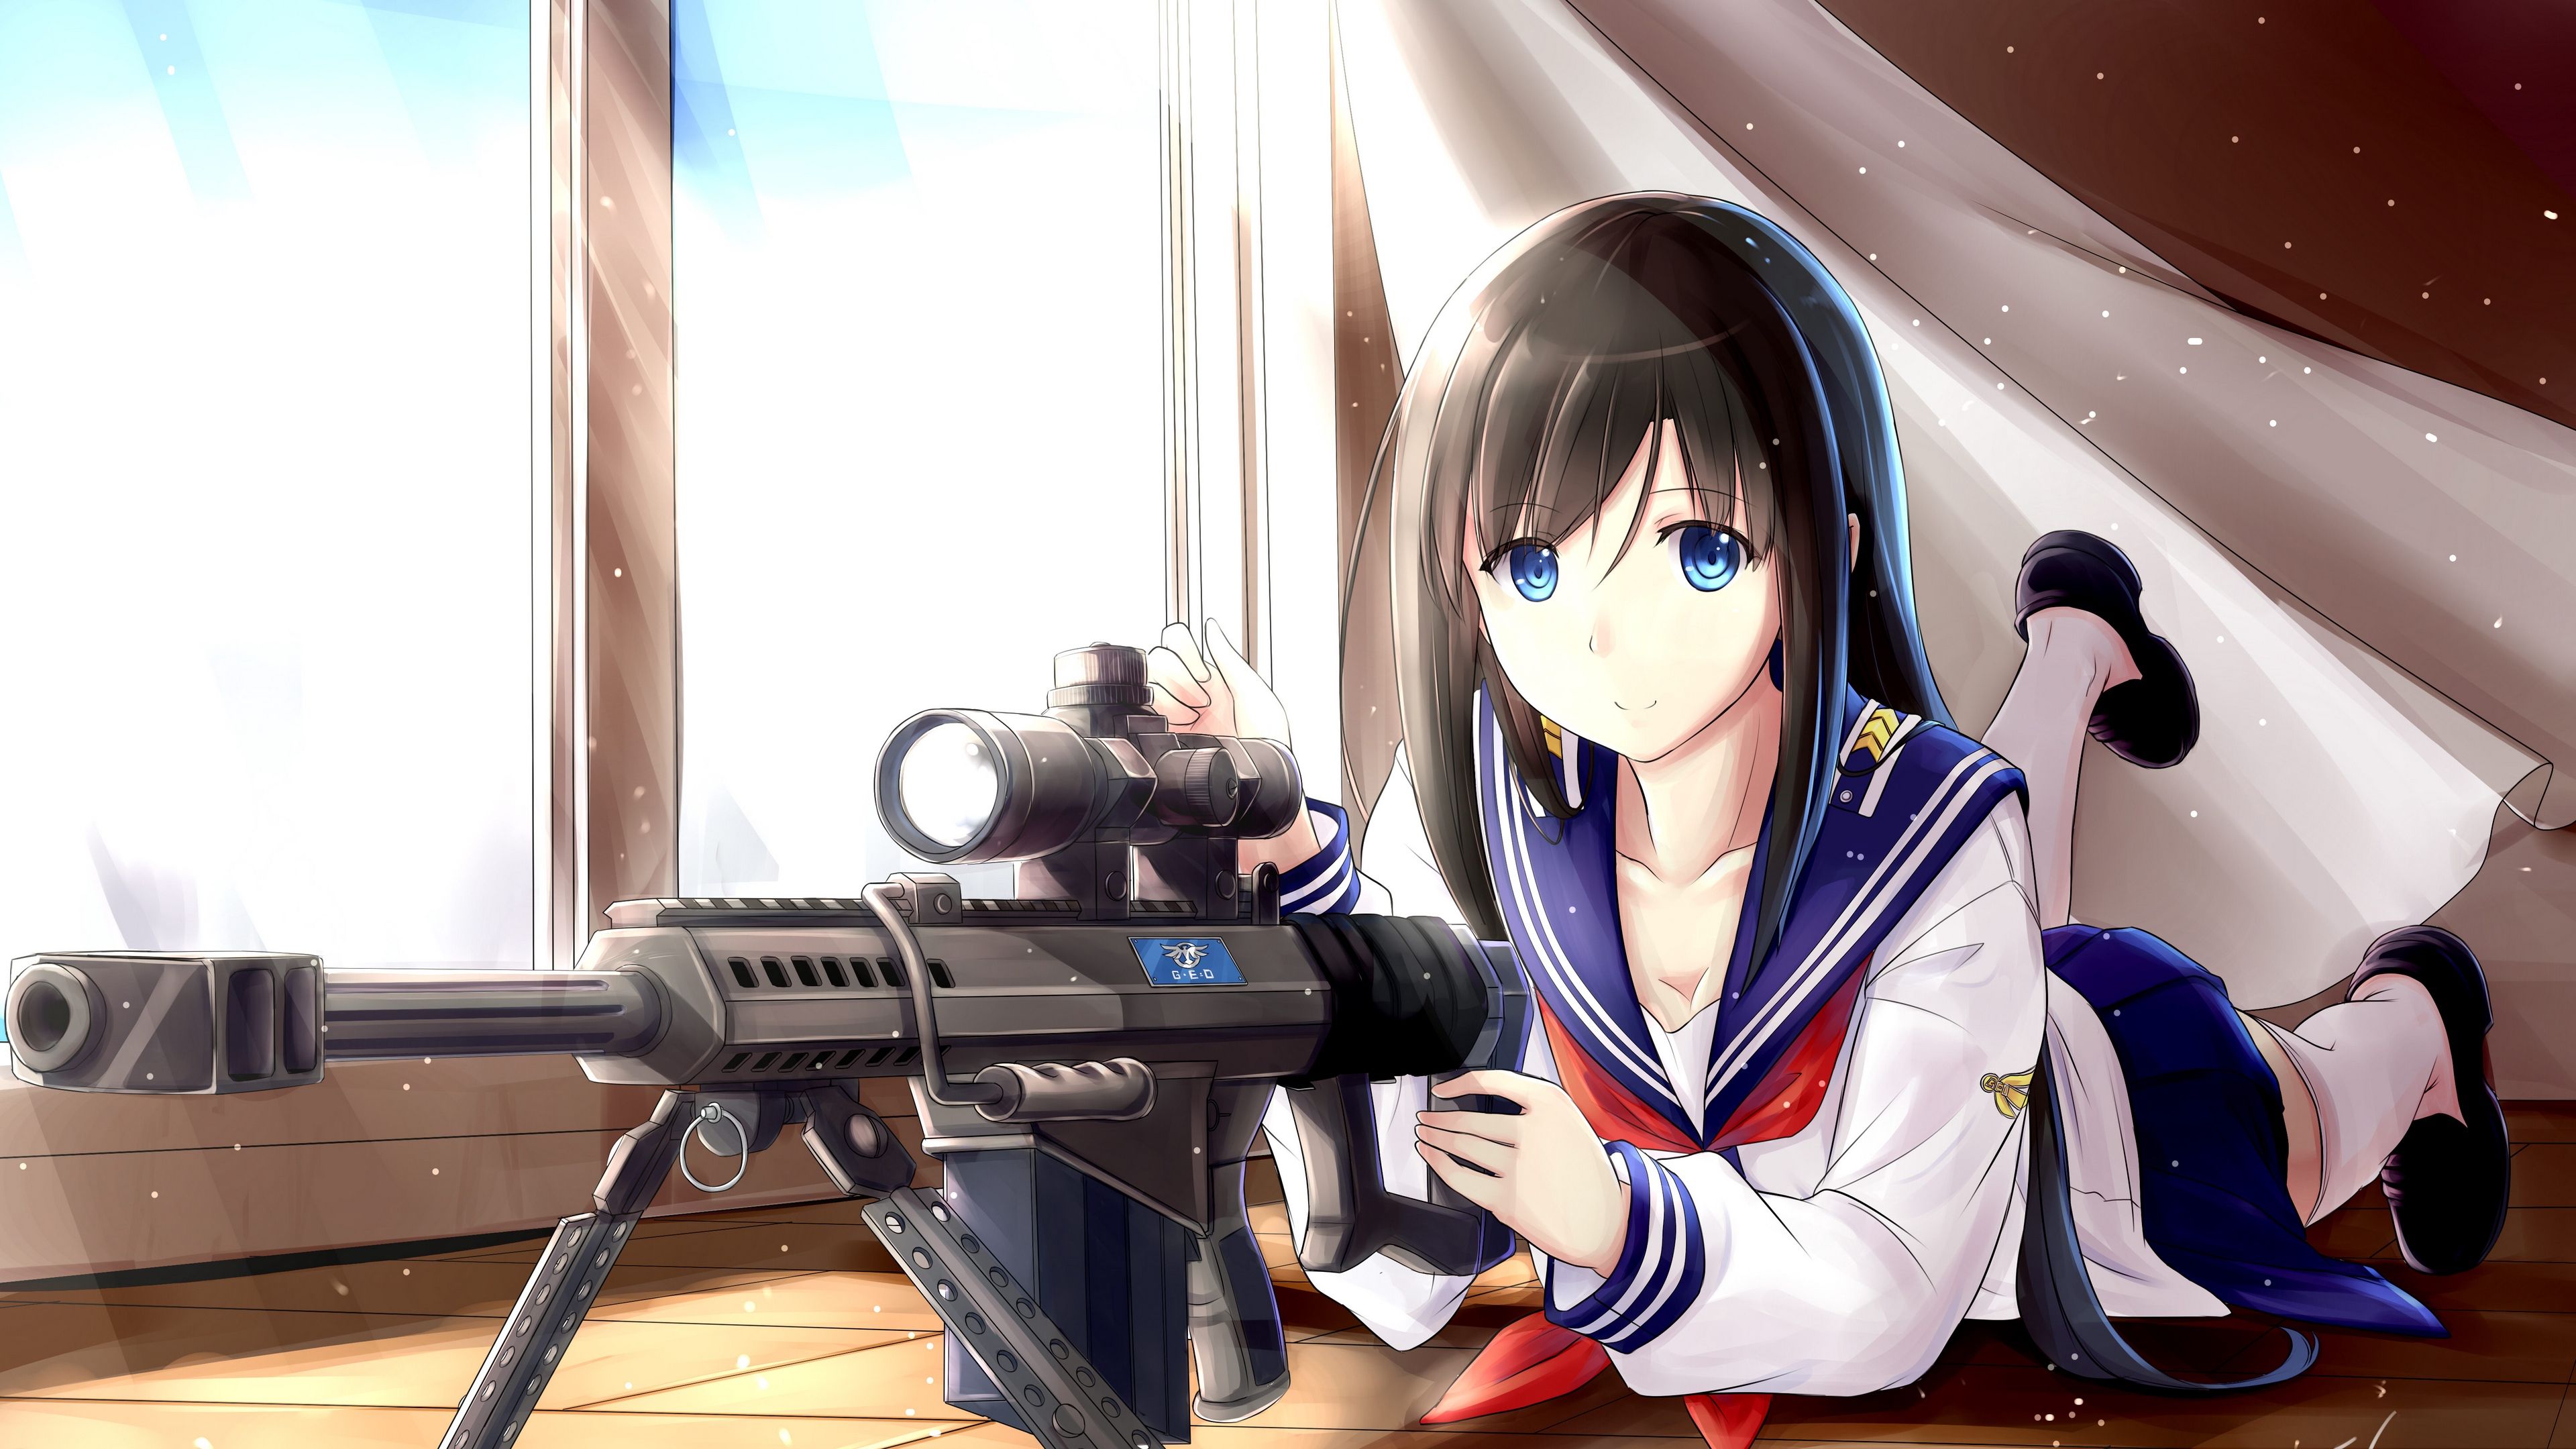 Wallpaper 4k girl, anime, automaton, guns, uniforms 4k Anime